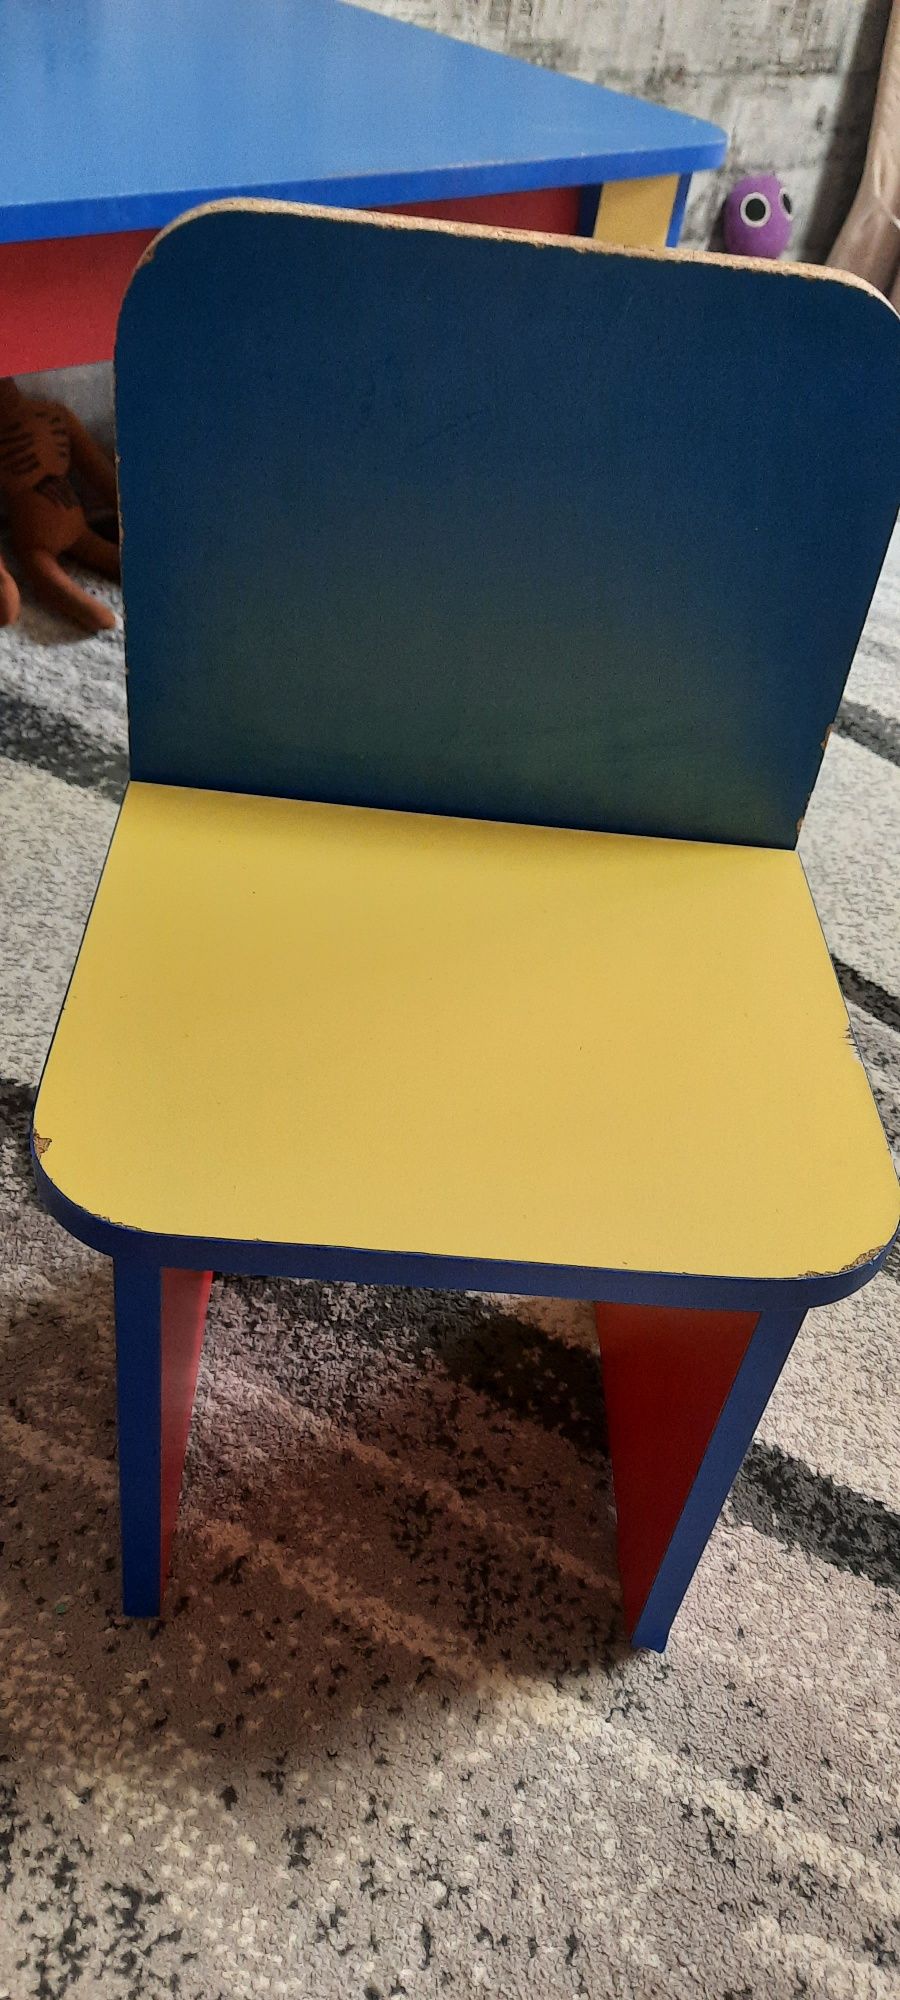 Стол и стул для дошкольника до 5-6 лет